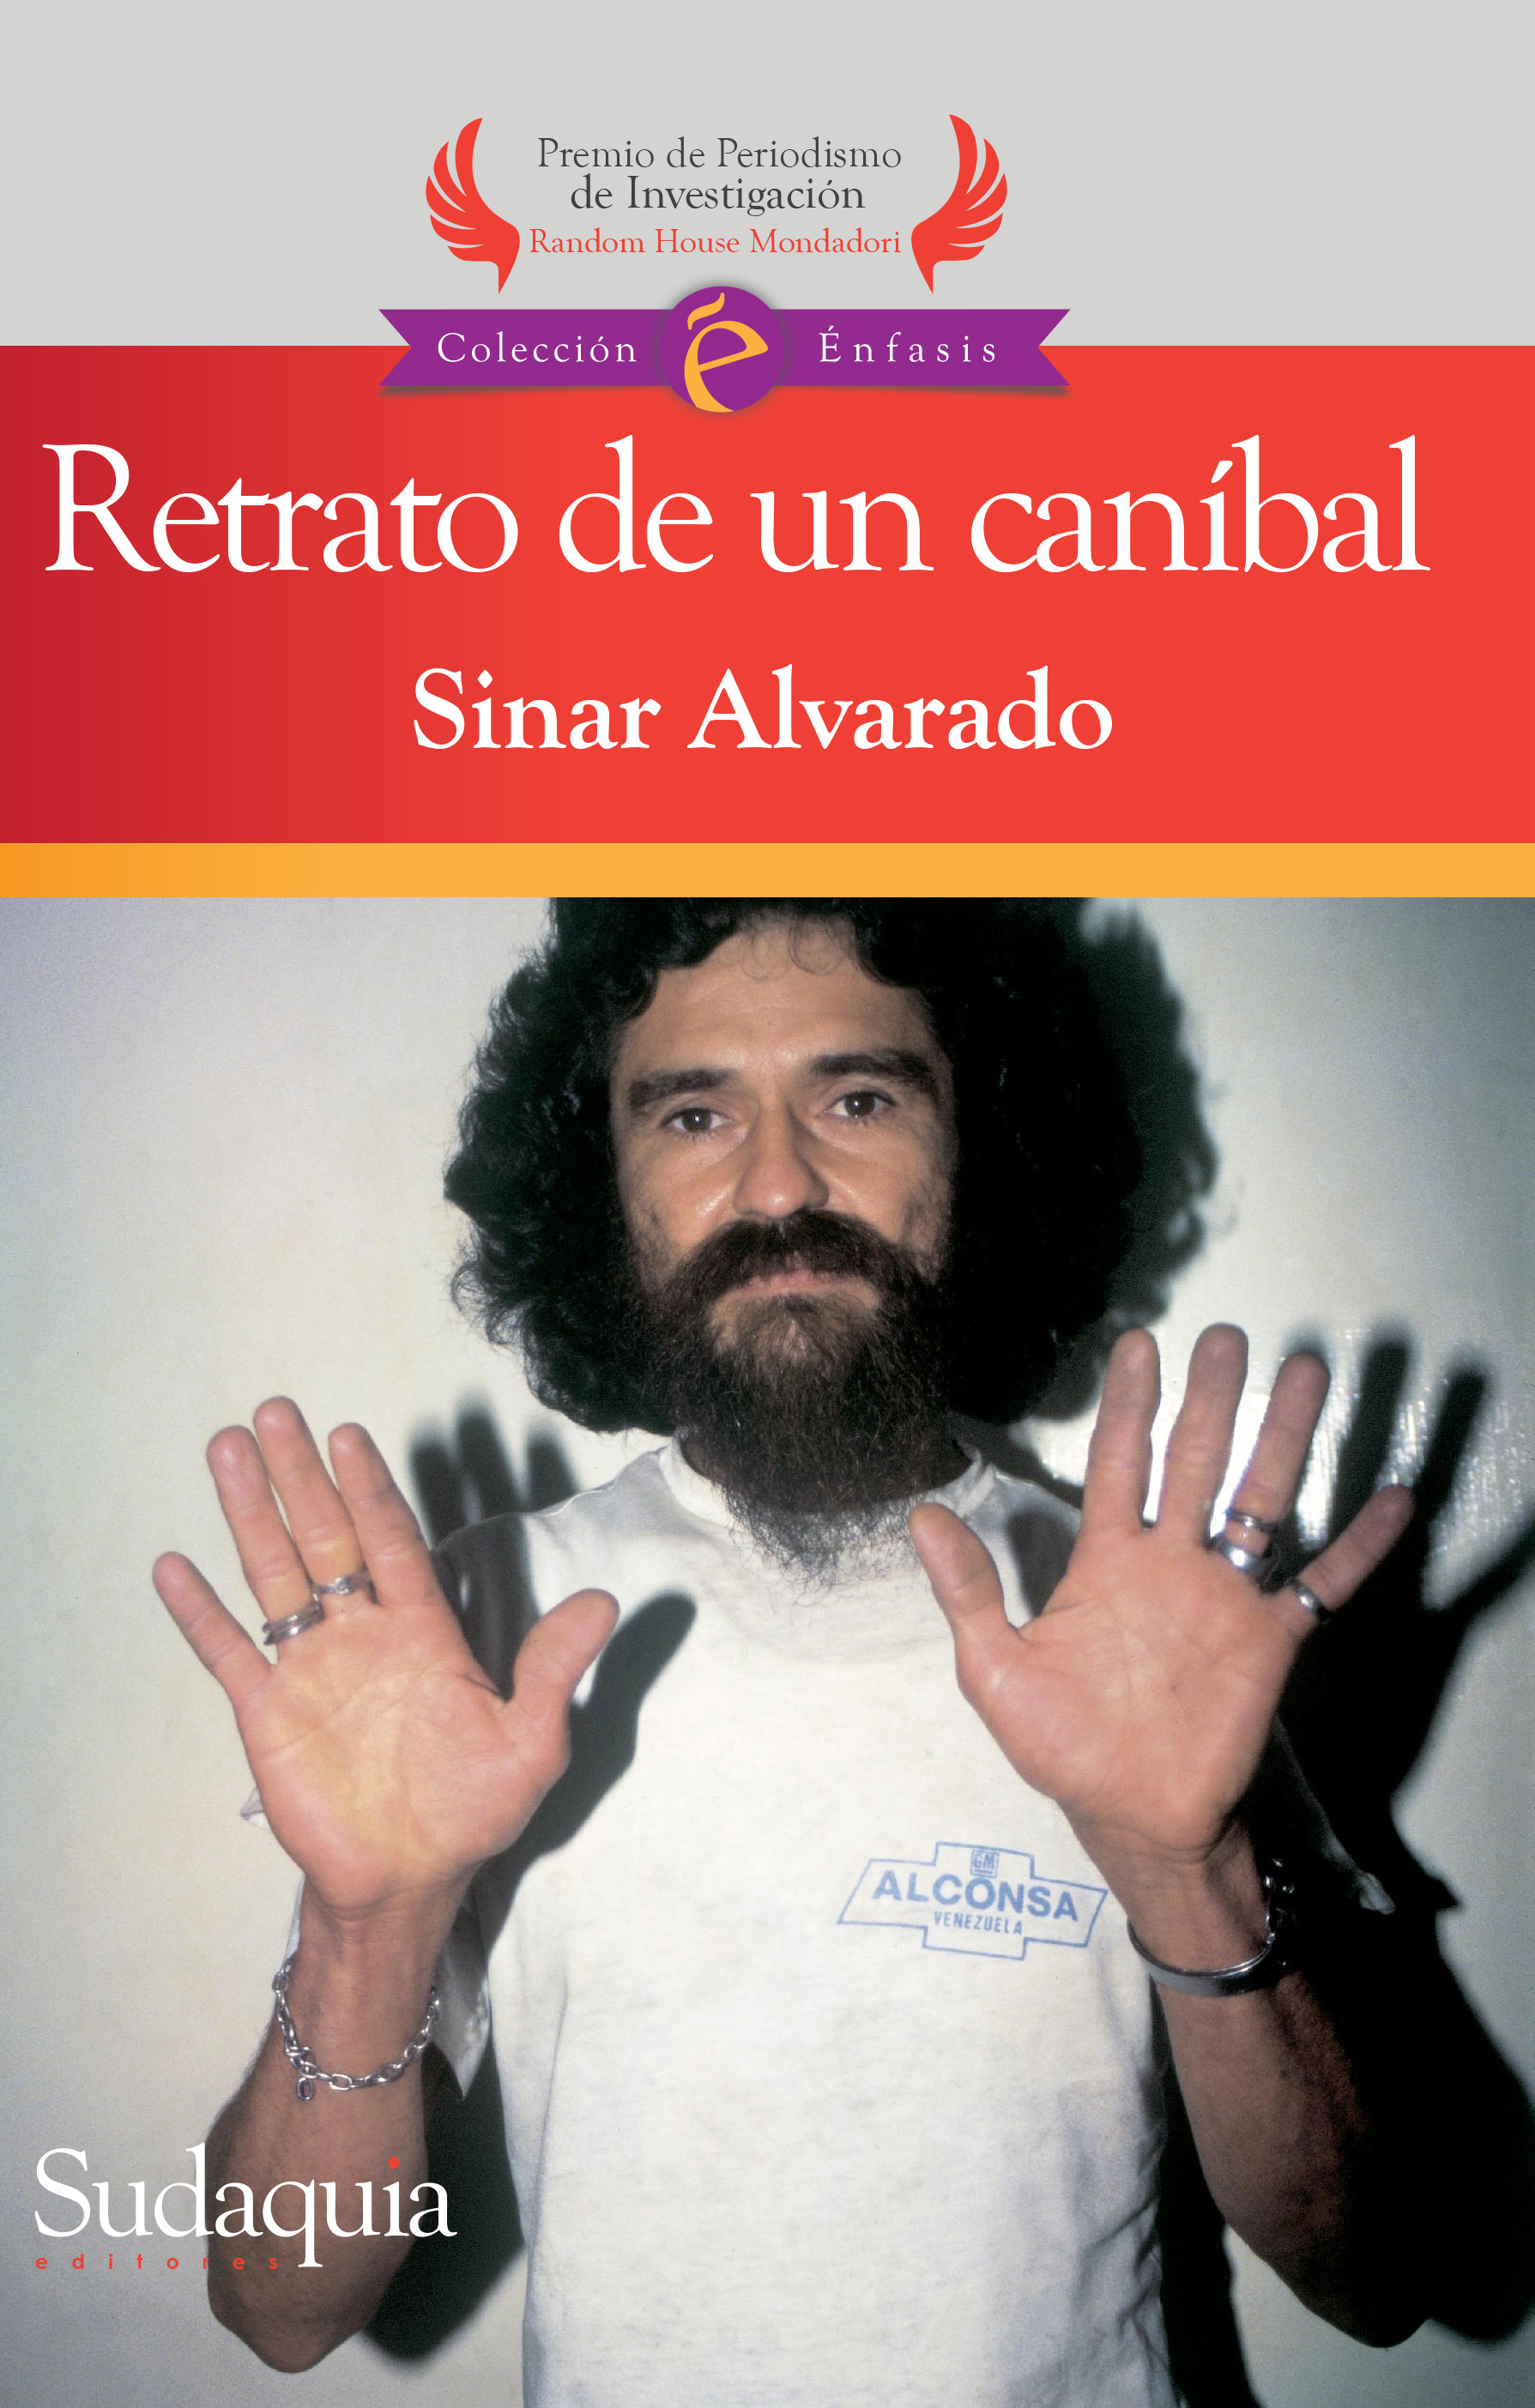 Retrato de un caníbal (2014) Sinar Alvarado